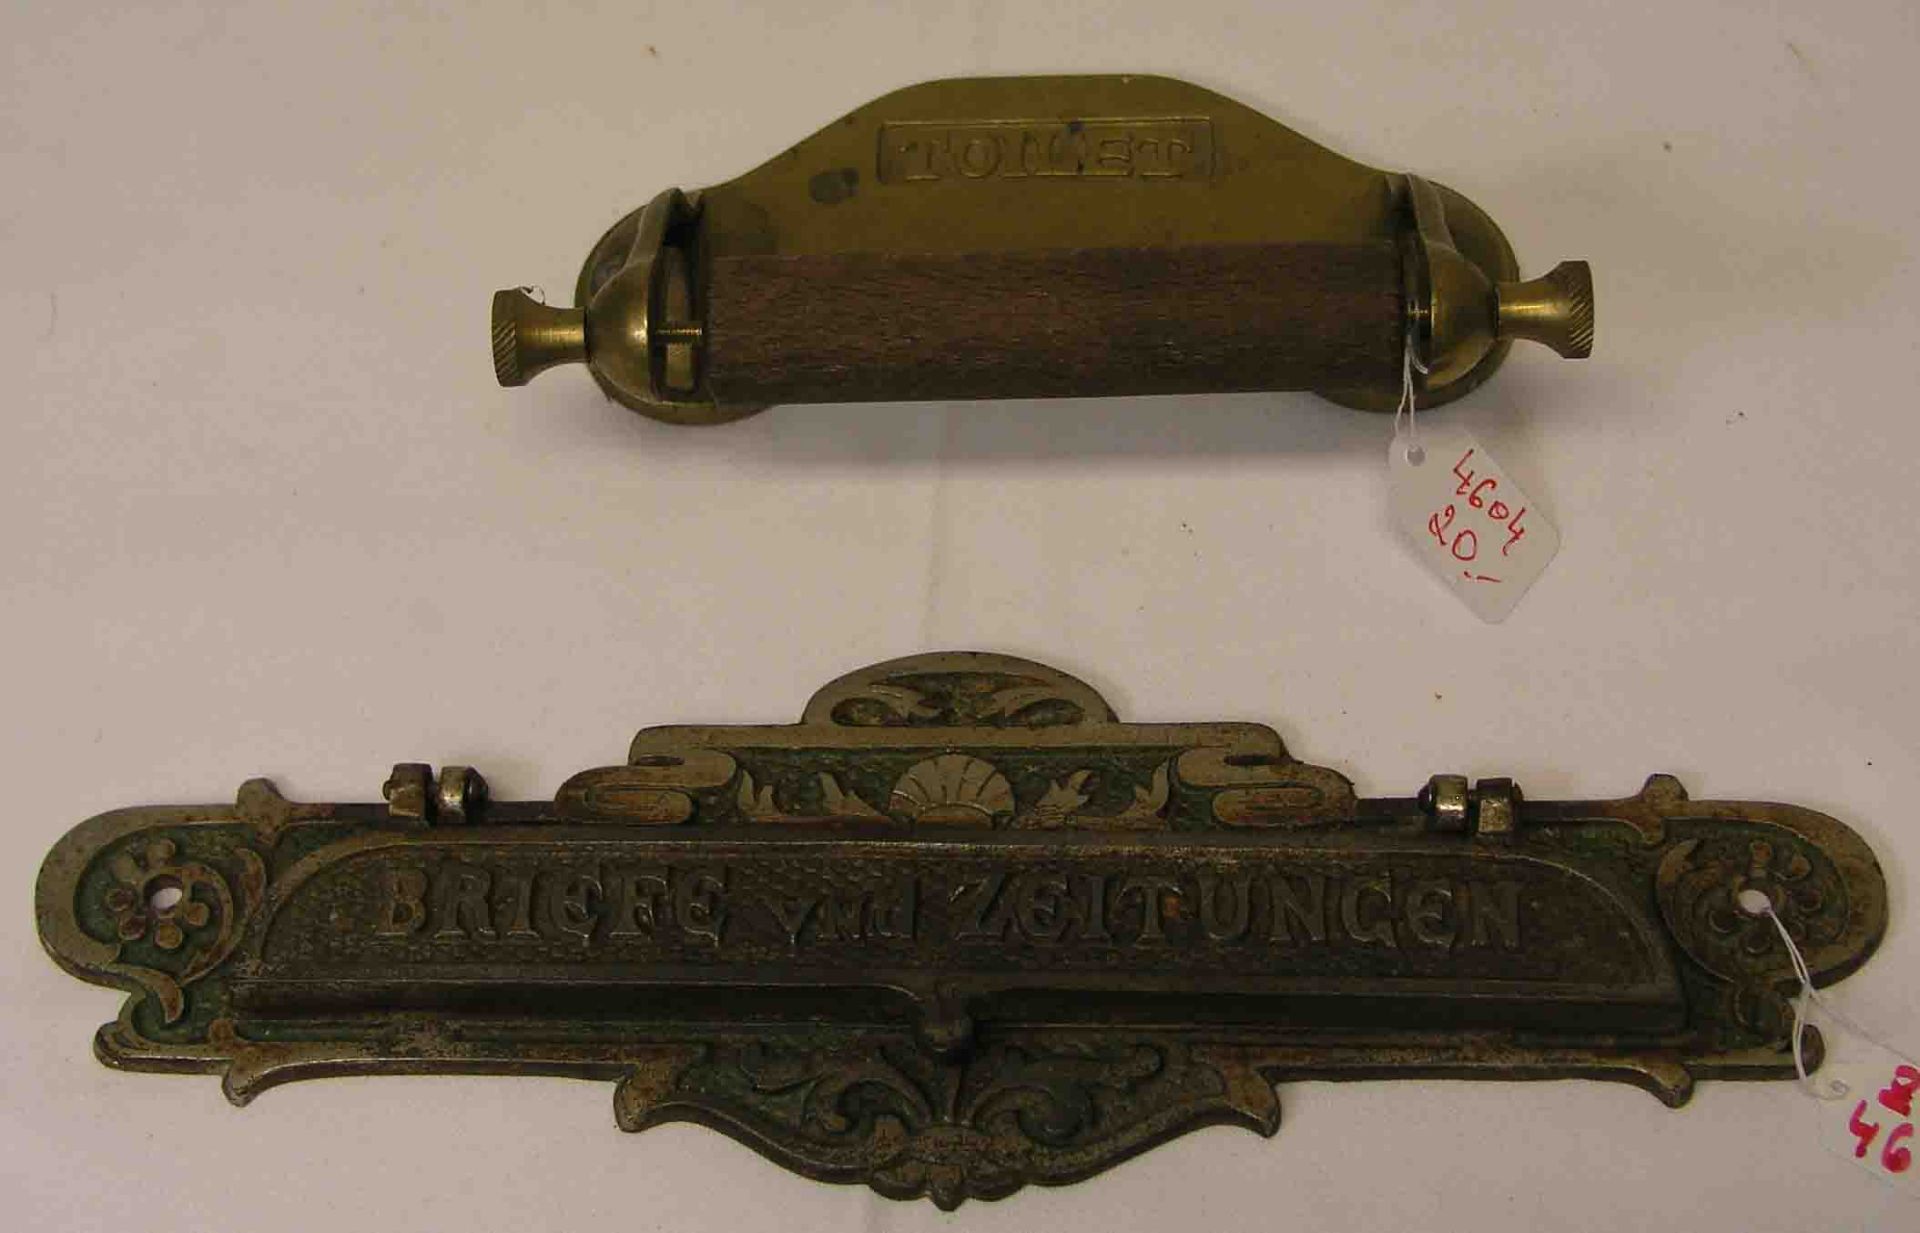 Toilettenrollen-Halter. Messing/Holz, Breite: 17cm. Dazu: Briefkastenschild um 1900. 9,5 x